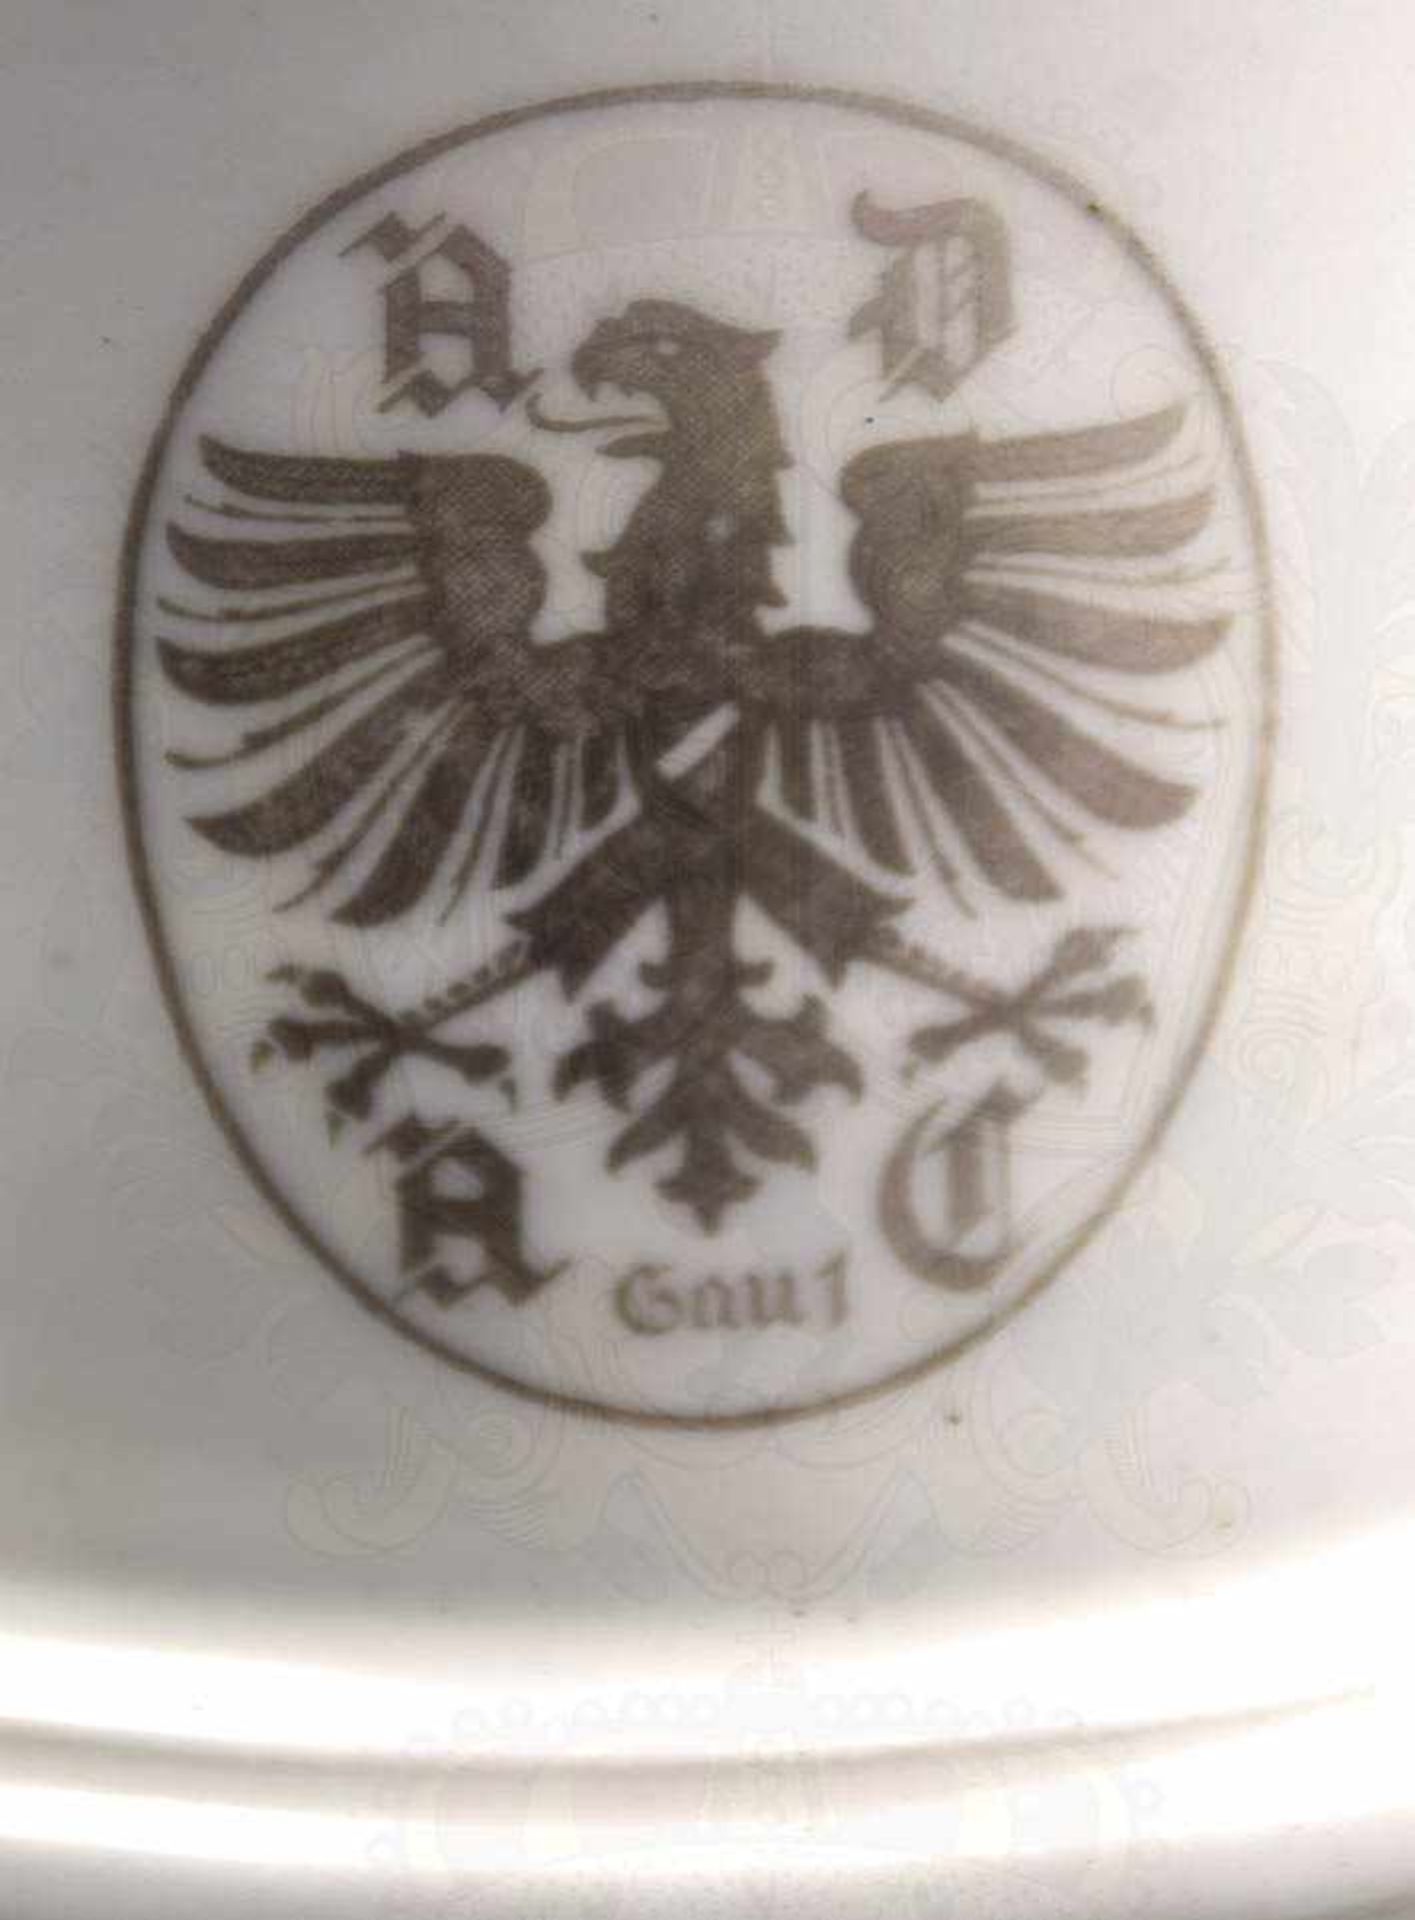 ADAC-SIEGERPOKAL 1. PREIS JAHRESTOURENWERTUNG 1930, weißes Porzellan, glasiert, Trichterform, - Image 5 of 6